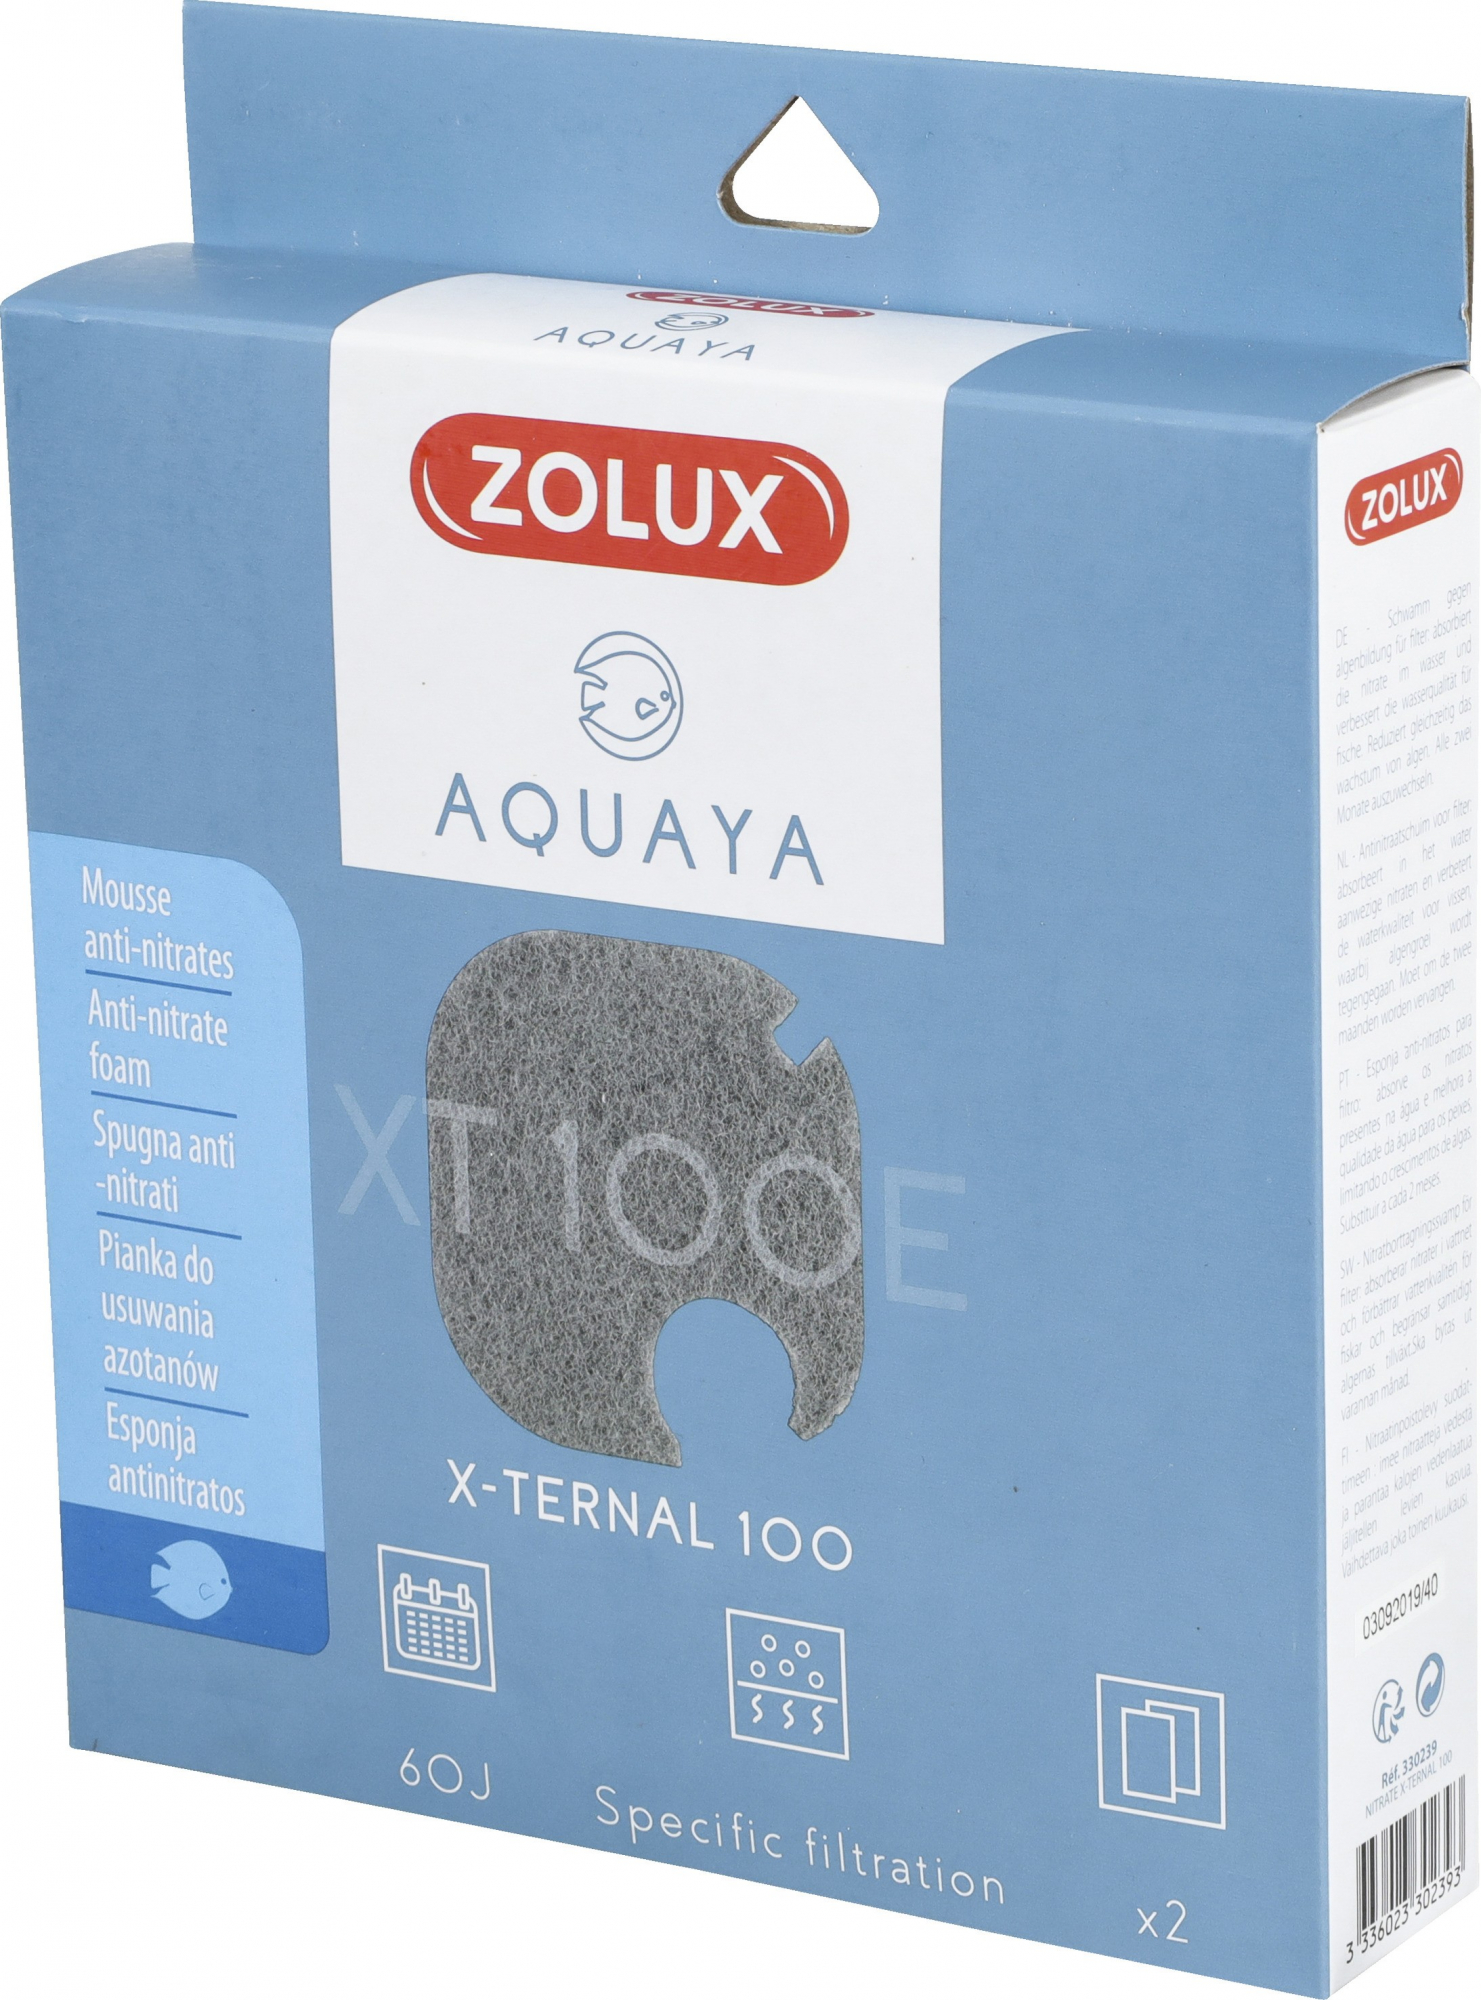 Mousse anti-nitrato per filtro Xternal Aquaya